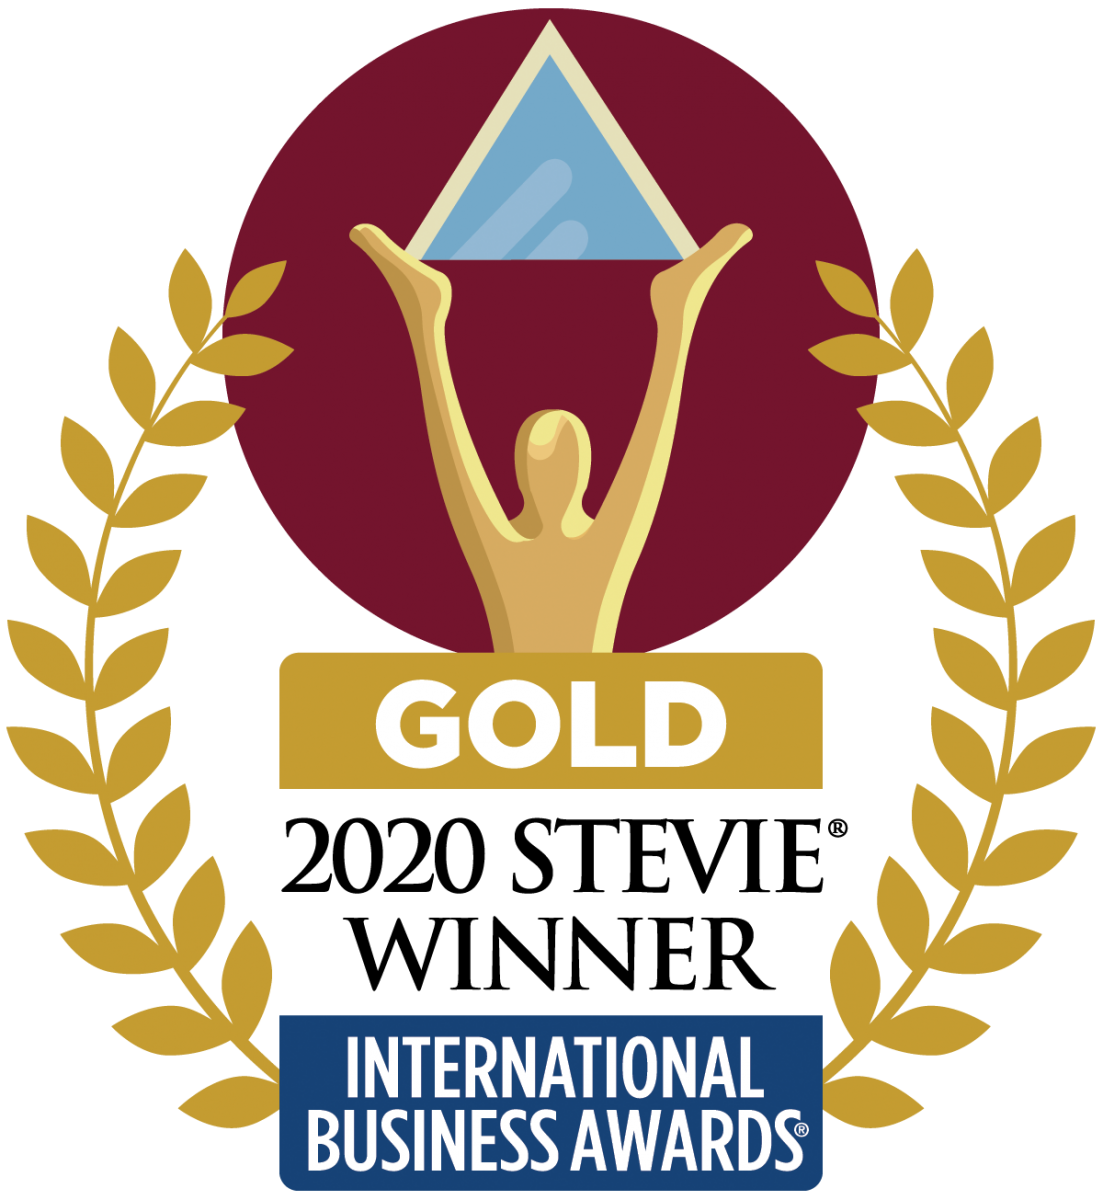 Gold 2020 International Business Awards Winner Emblem